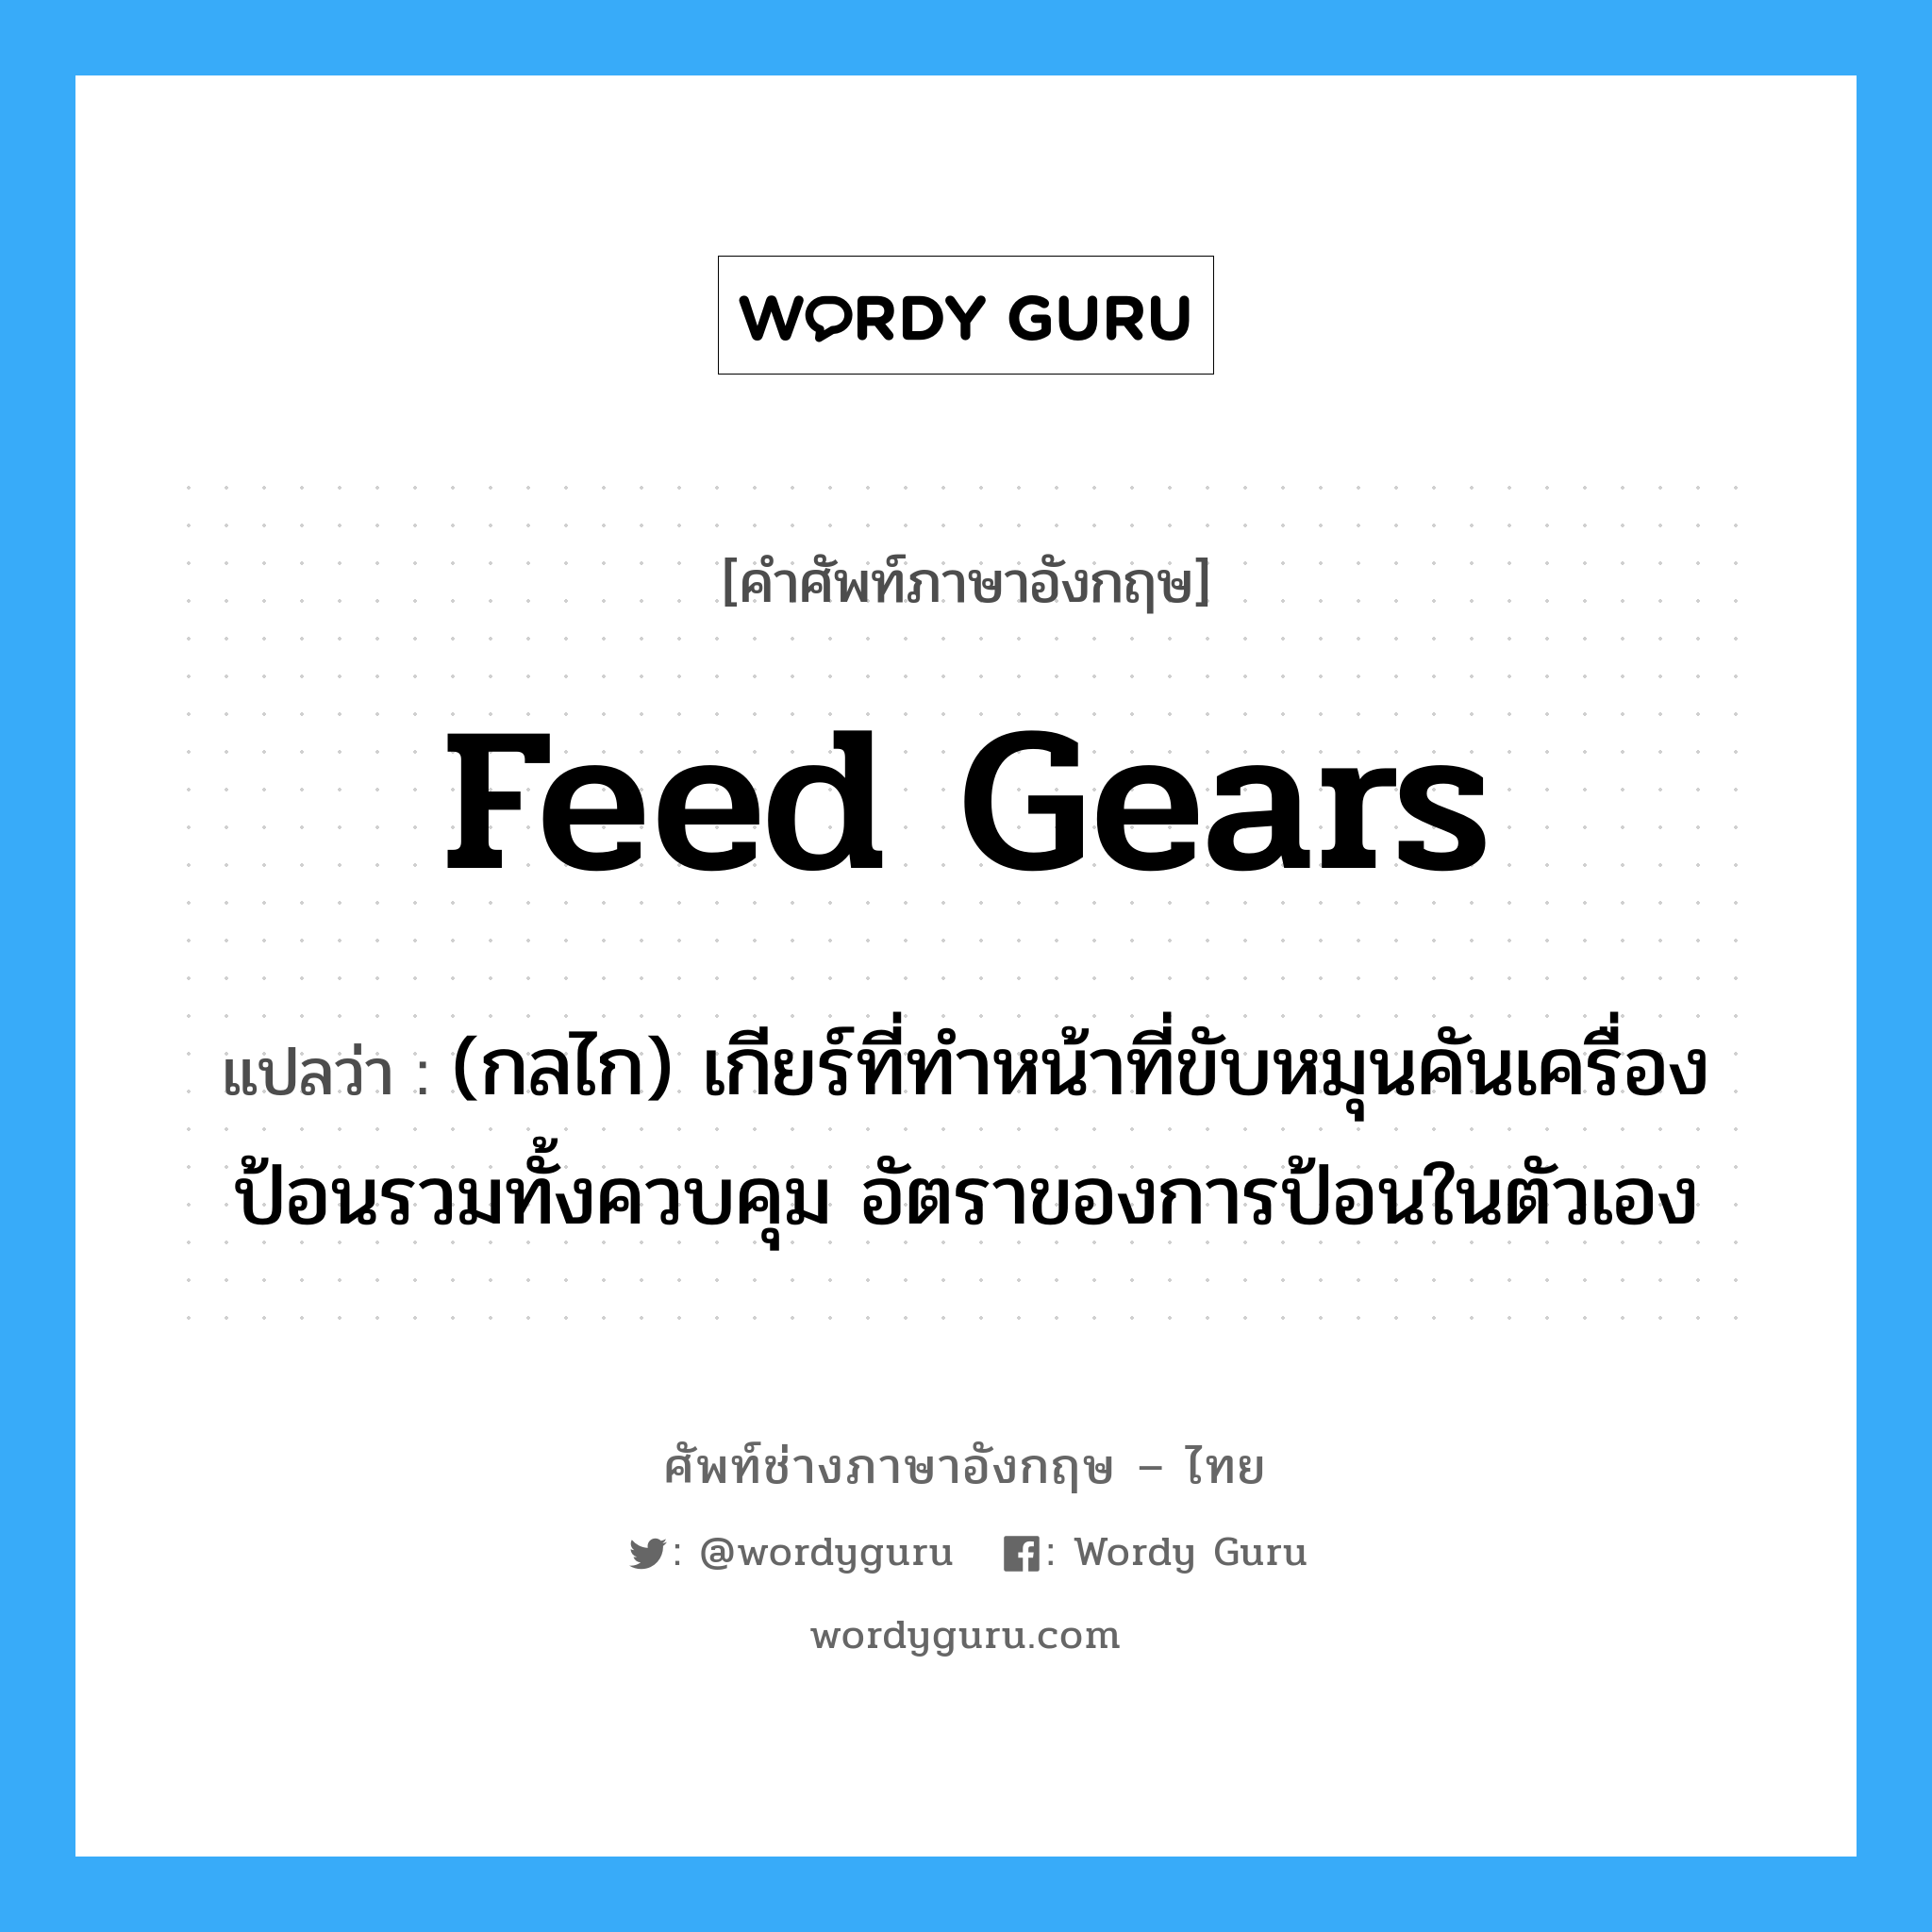 feed gears แปลว่า?, คำศัพท์ช่างภาษาอังกฤษ - ไทย feed gears คำศัพท์ภาษาอังกฤษ feed gears แปลว่า (กลไก) เกียร์ที่ทำหน้าที่ขับหมุนคันเครื่องป้อนรวมทั้งควบคุม อัตราของการป้อนในตัวเอง